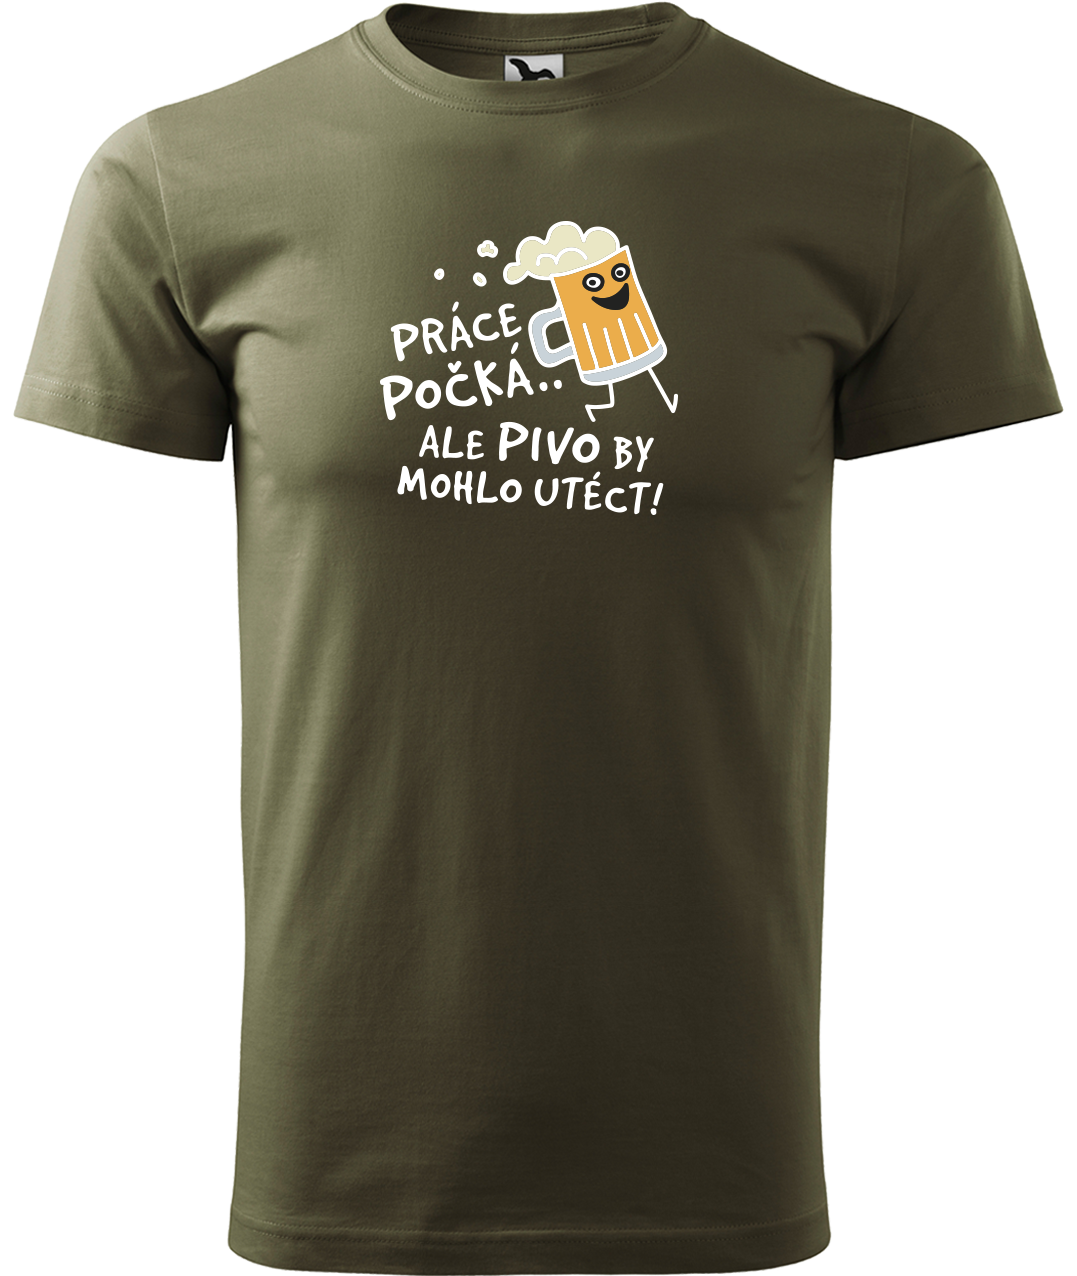 Pivní tričko - Pivo by mohlo utéct Velikost: S, Barva: Military (69)